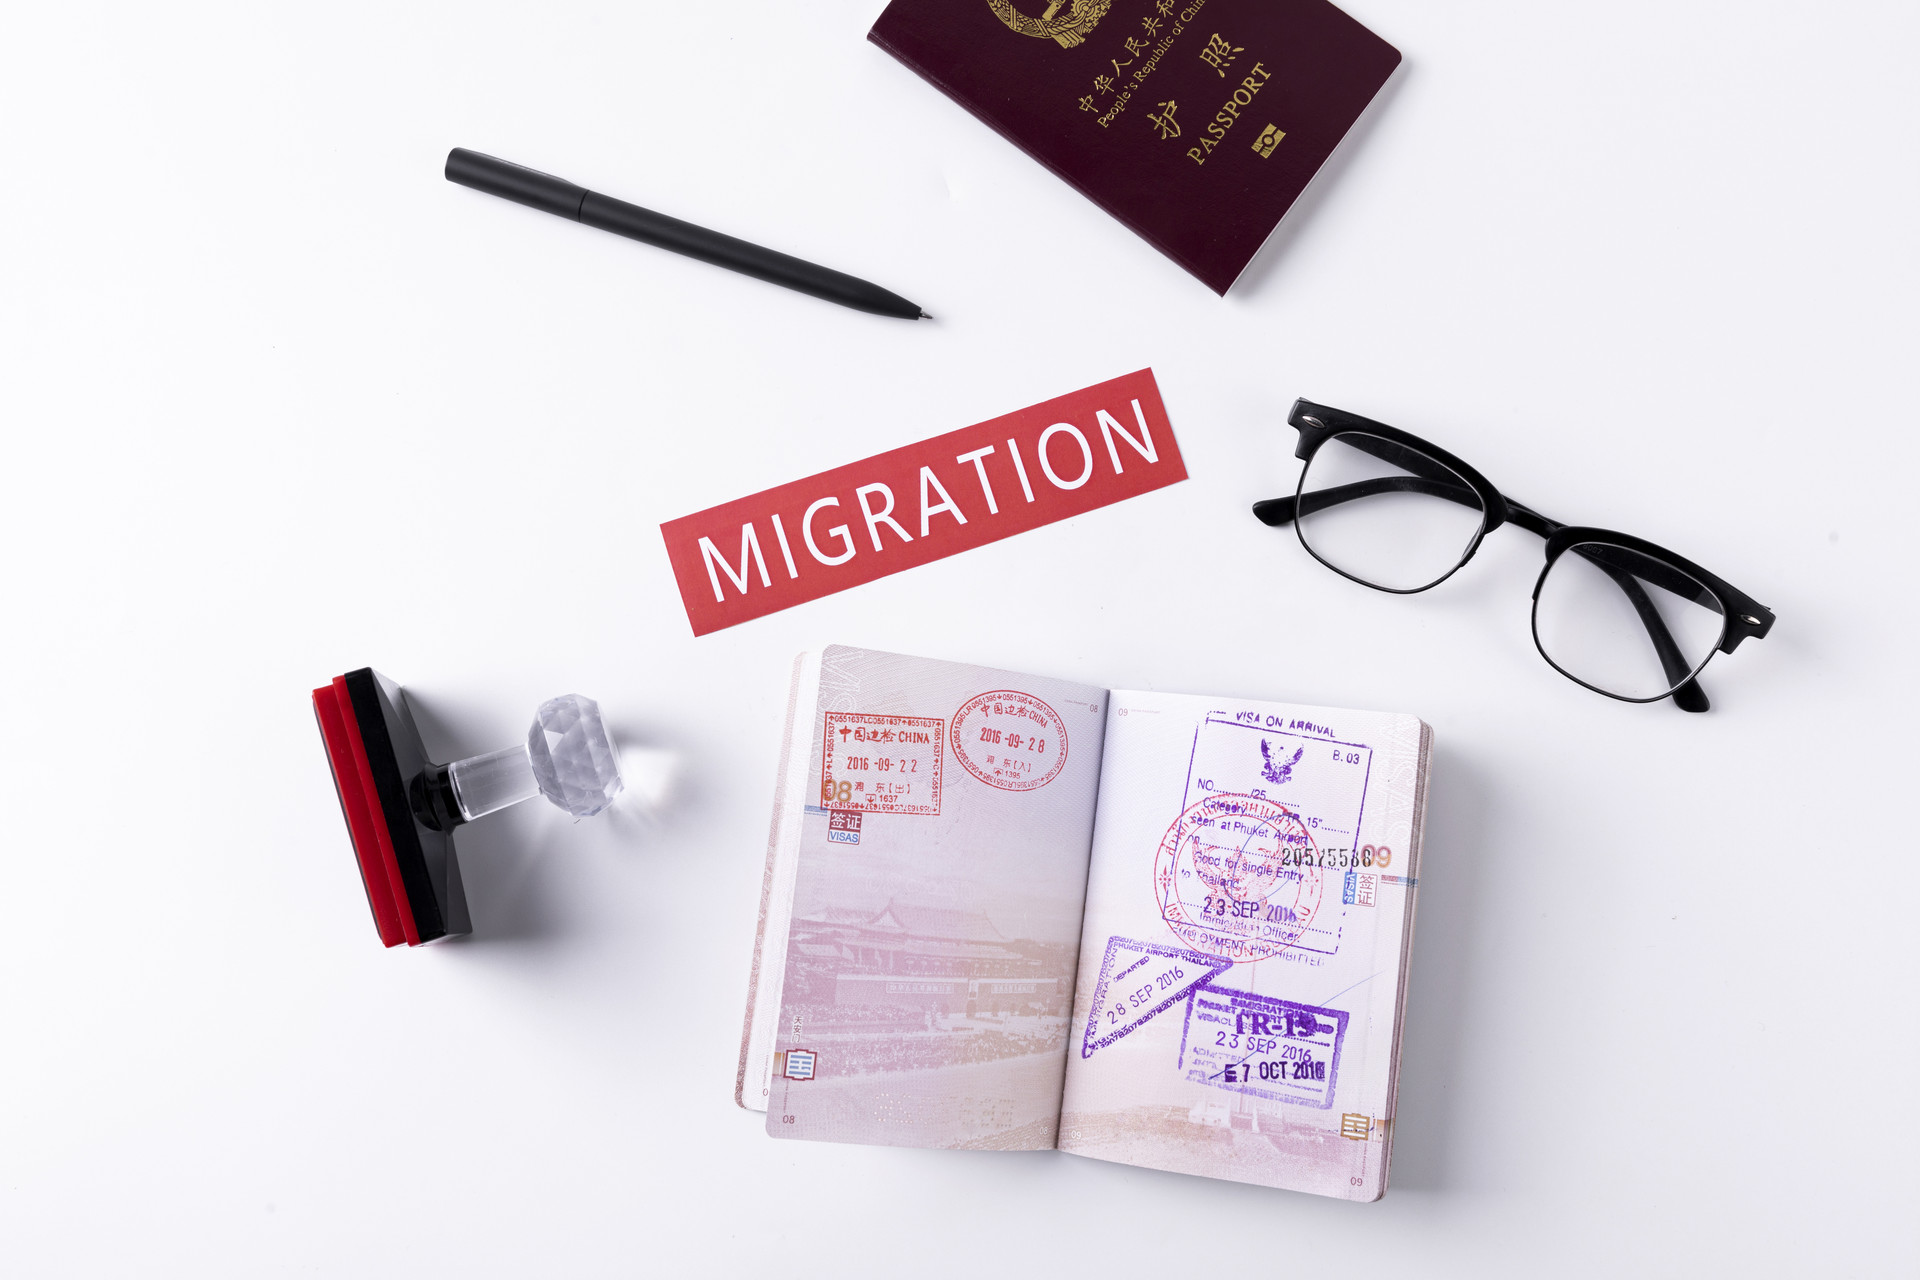 义乌去英国留学移民需要满足哪些条件?